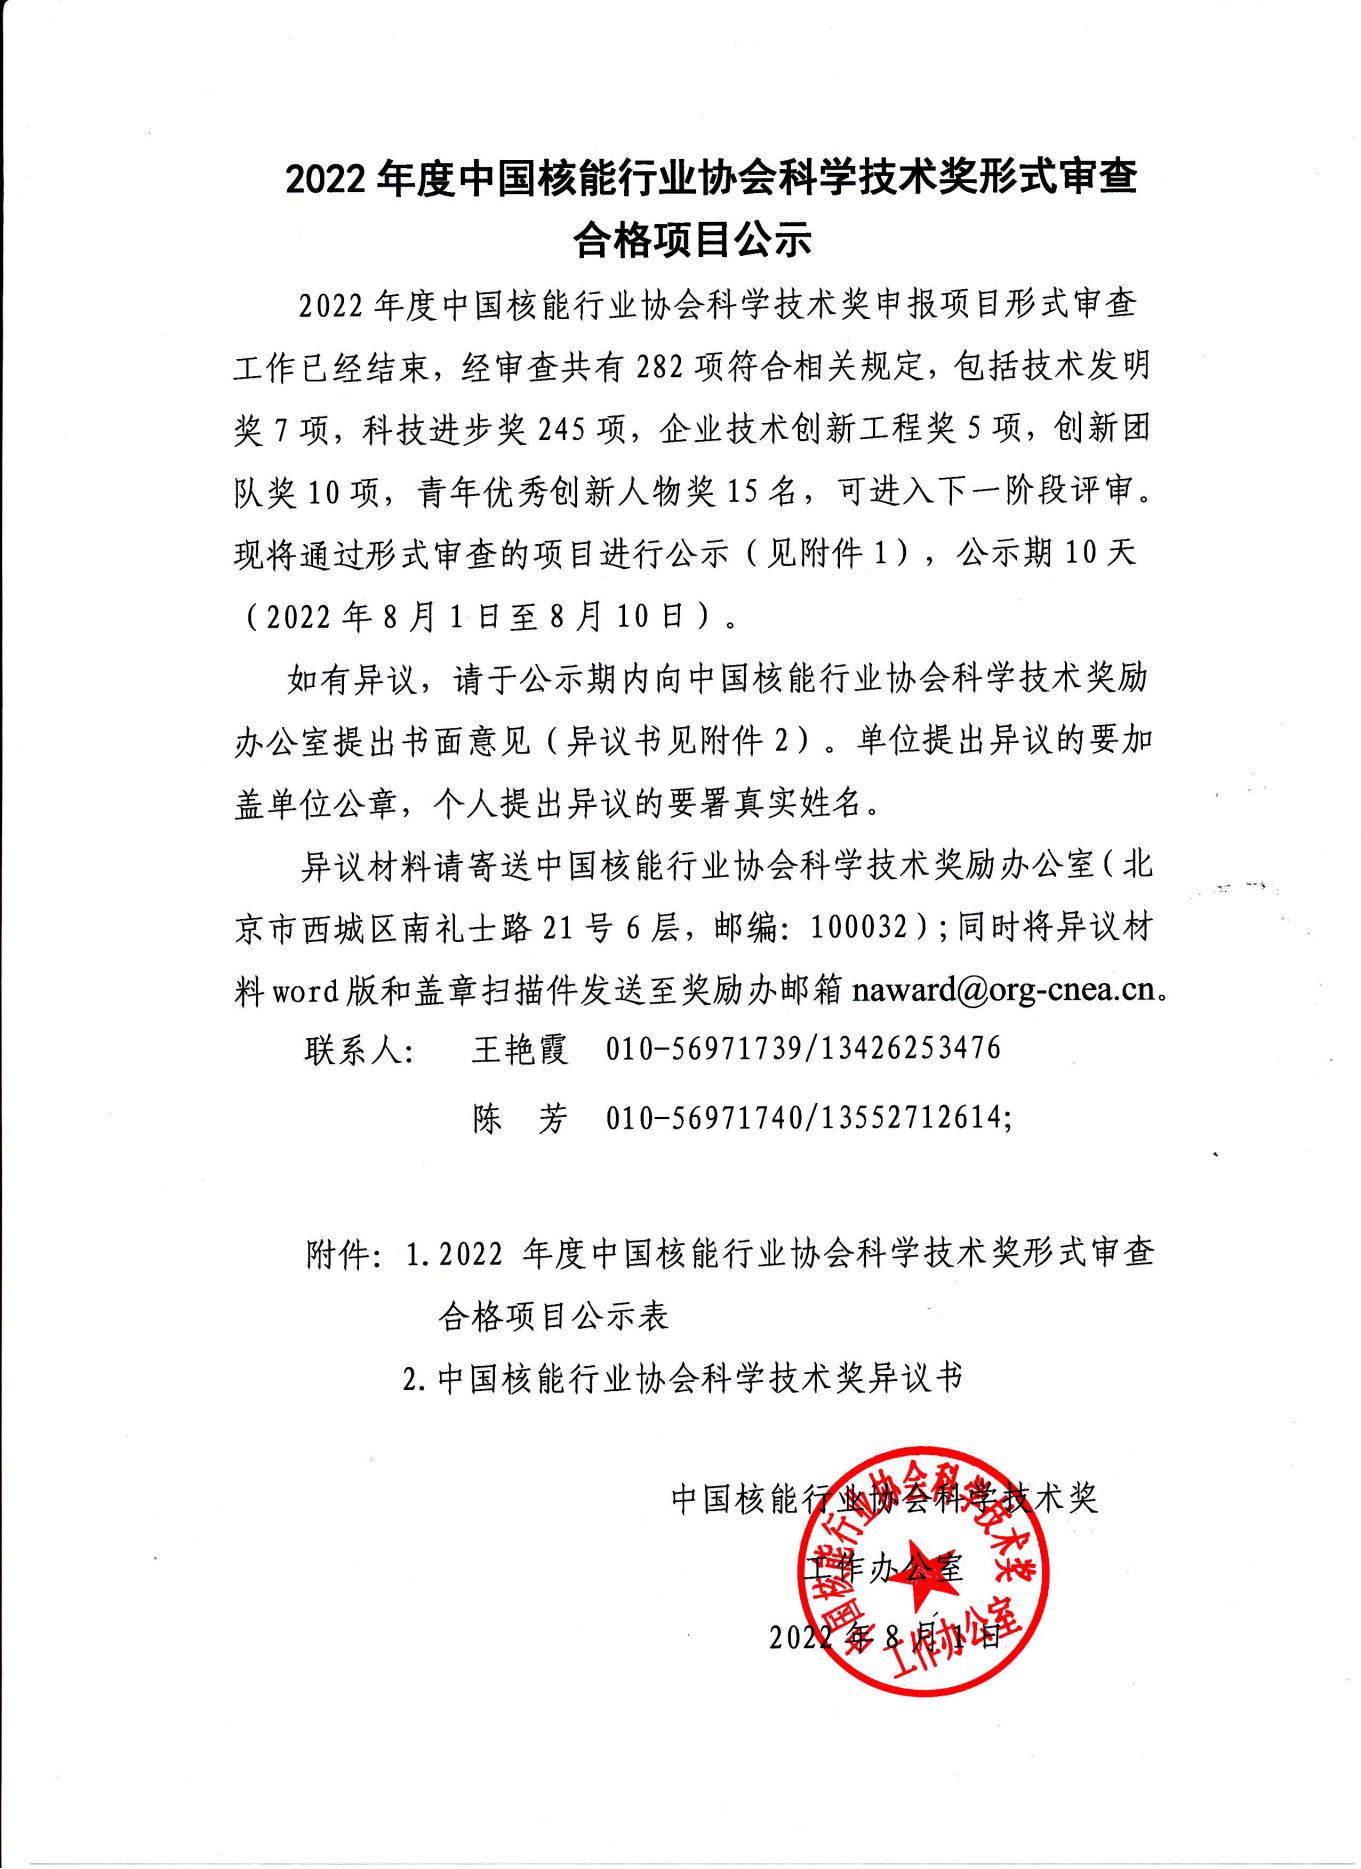 2022年度中国核能行业协会科学技术奖形式审查合格项目公示_00.jpg